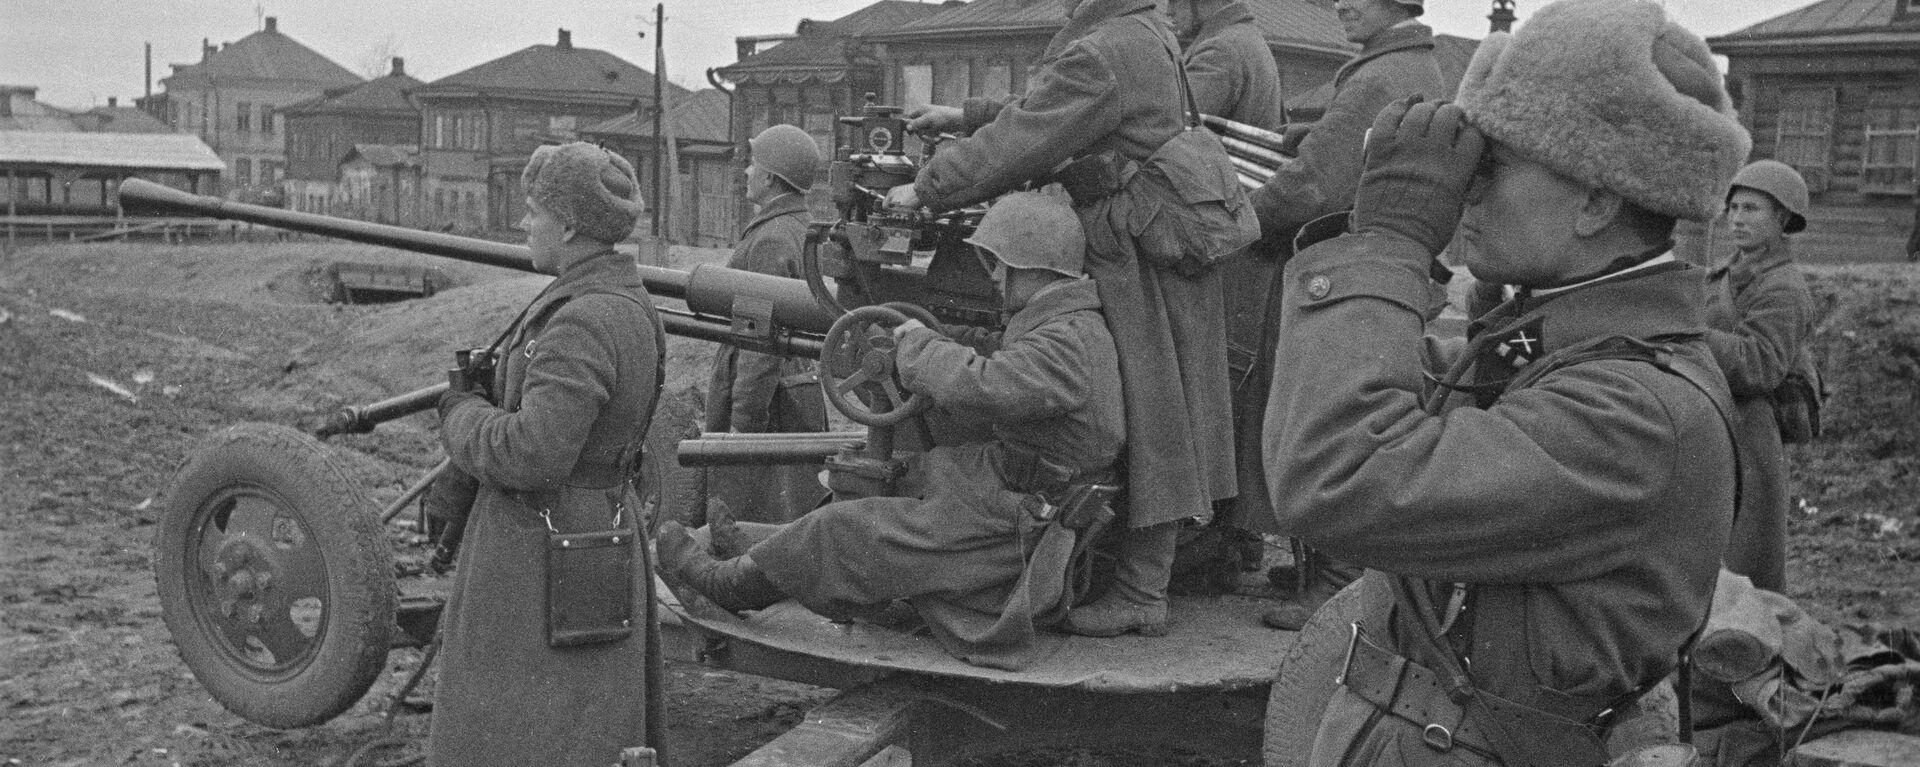 Зенитный расчет сил Красной армии на улицах Тулы, 1941 год - Sputnik Latvija, 1920, 20.06.2020